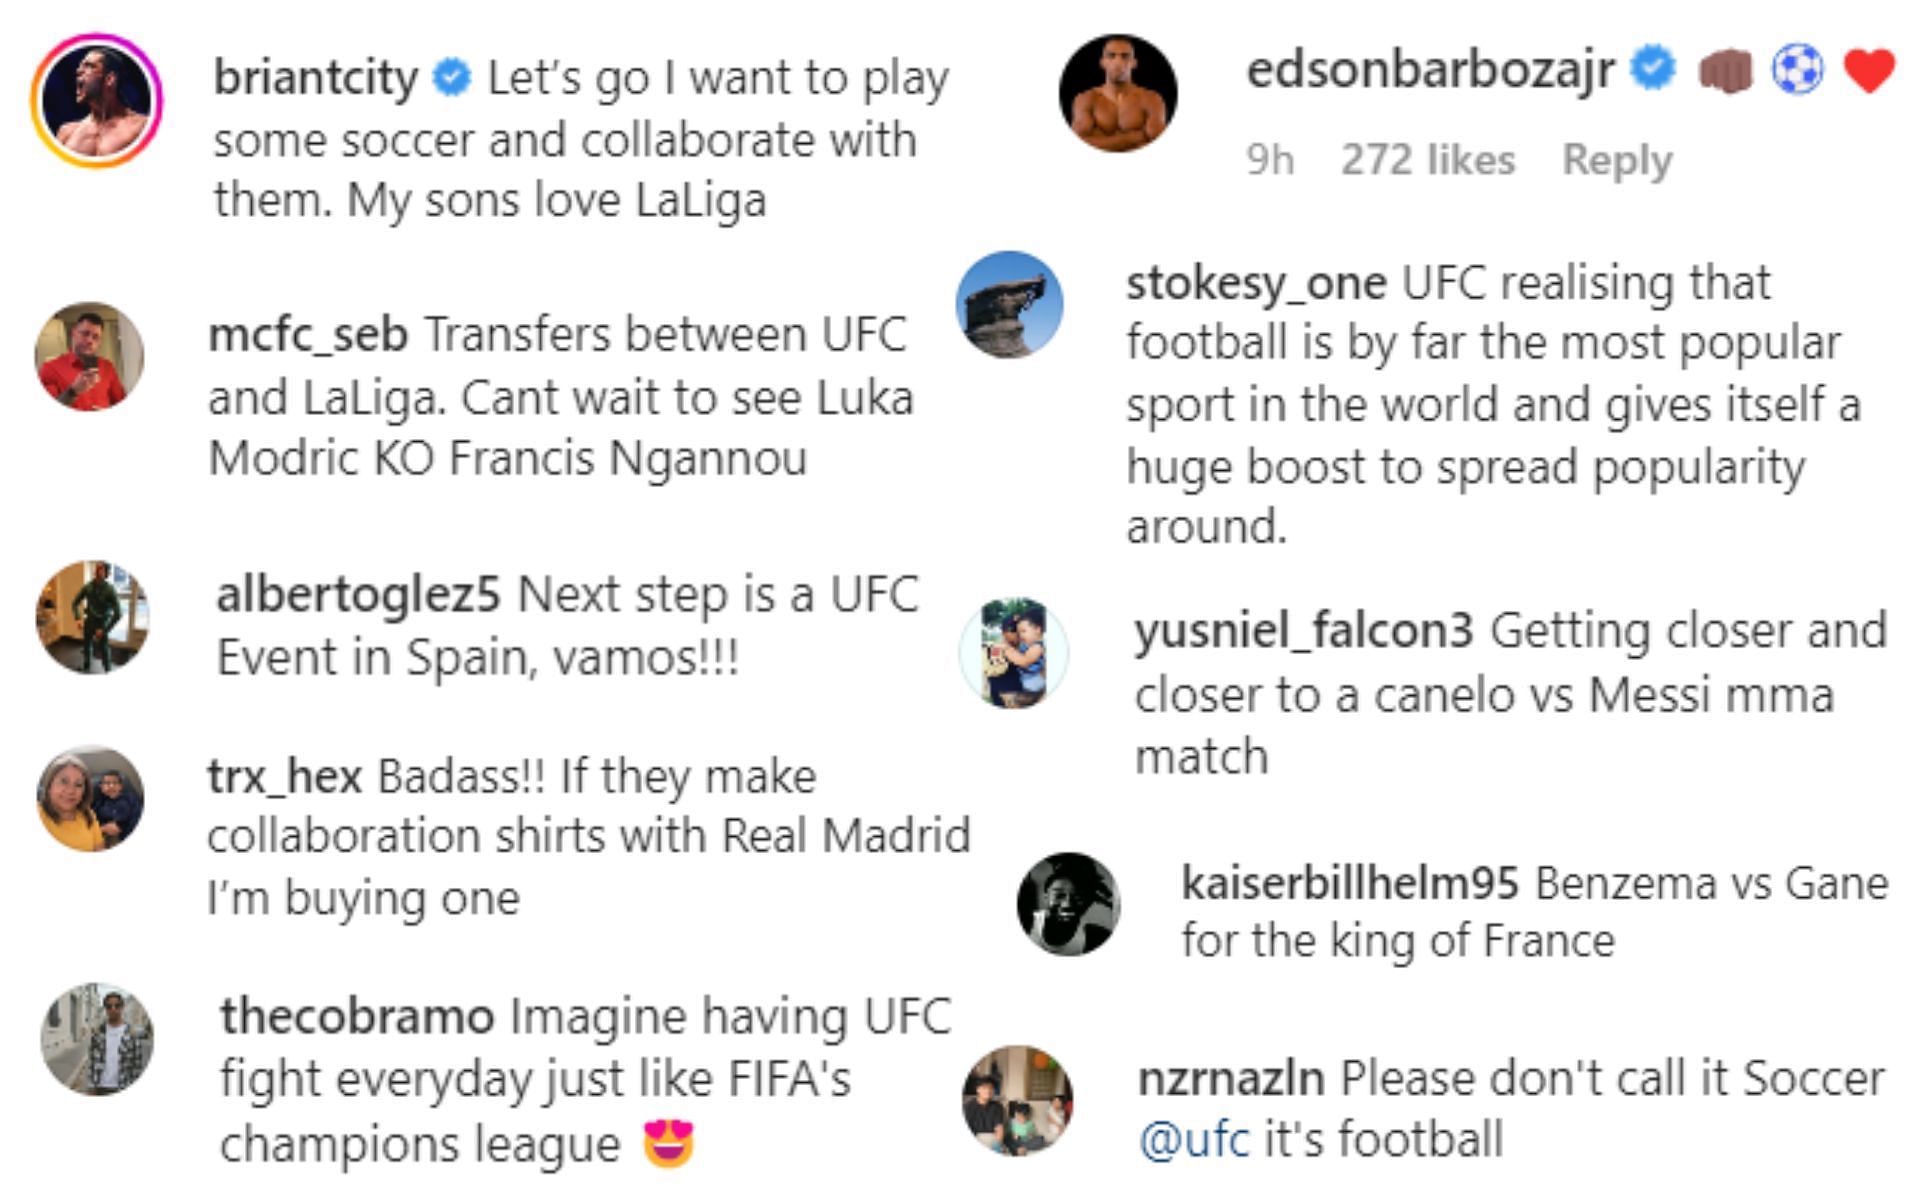 Aficionados a la lucha y luchadores reaccionan a la nueva alianza con LaLiga [Photo credit: @ufc on Instagram]